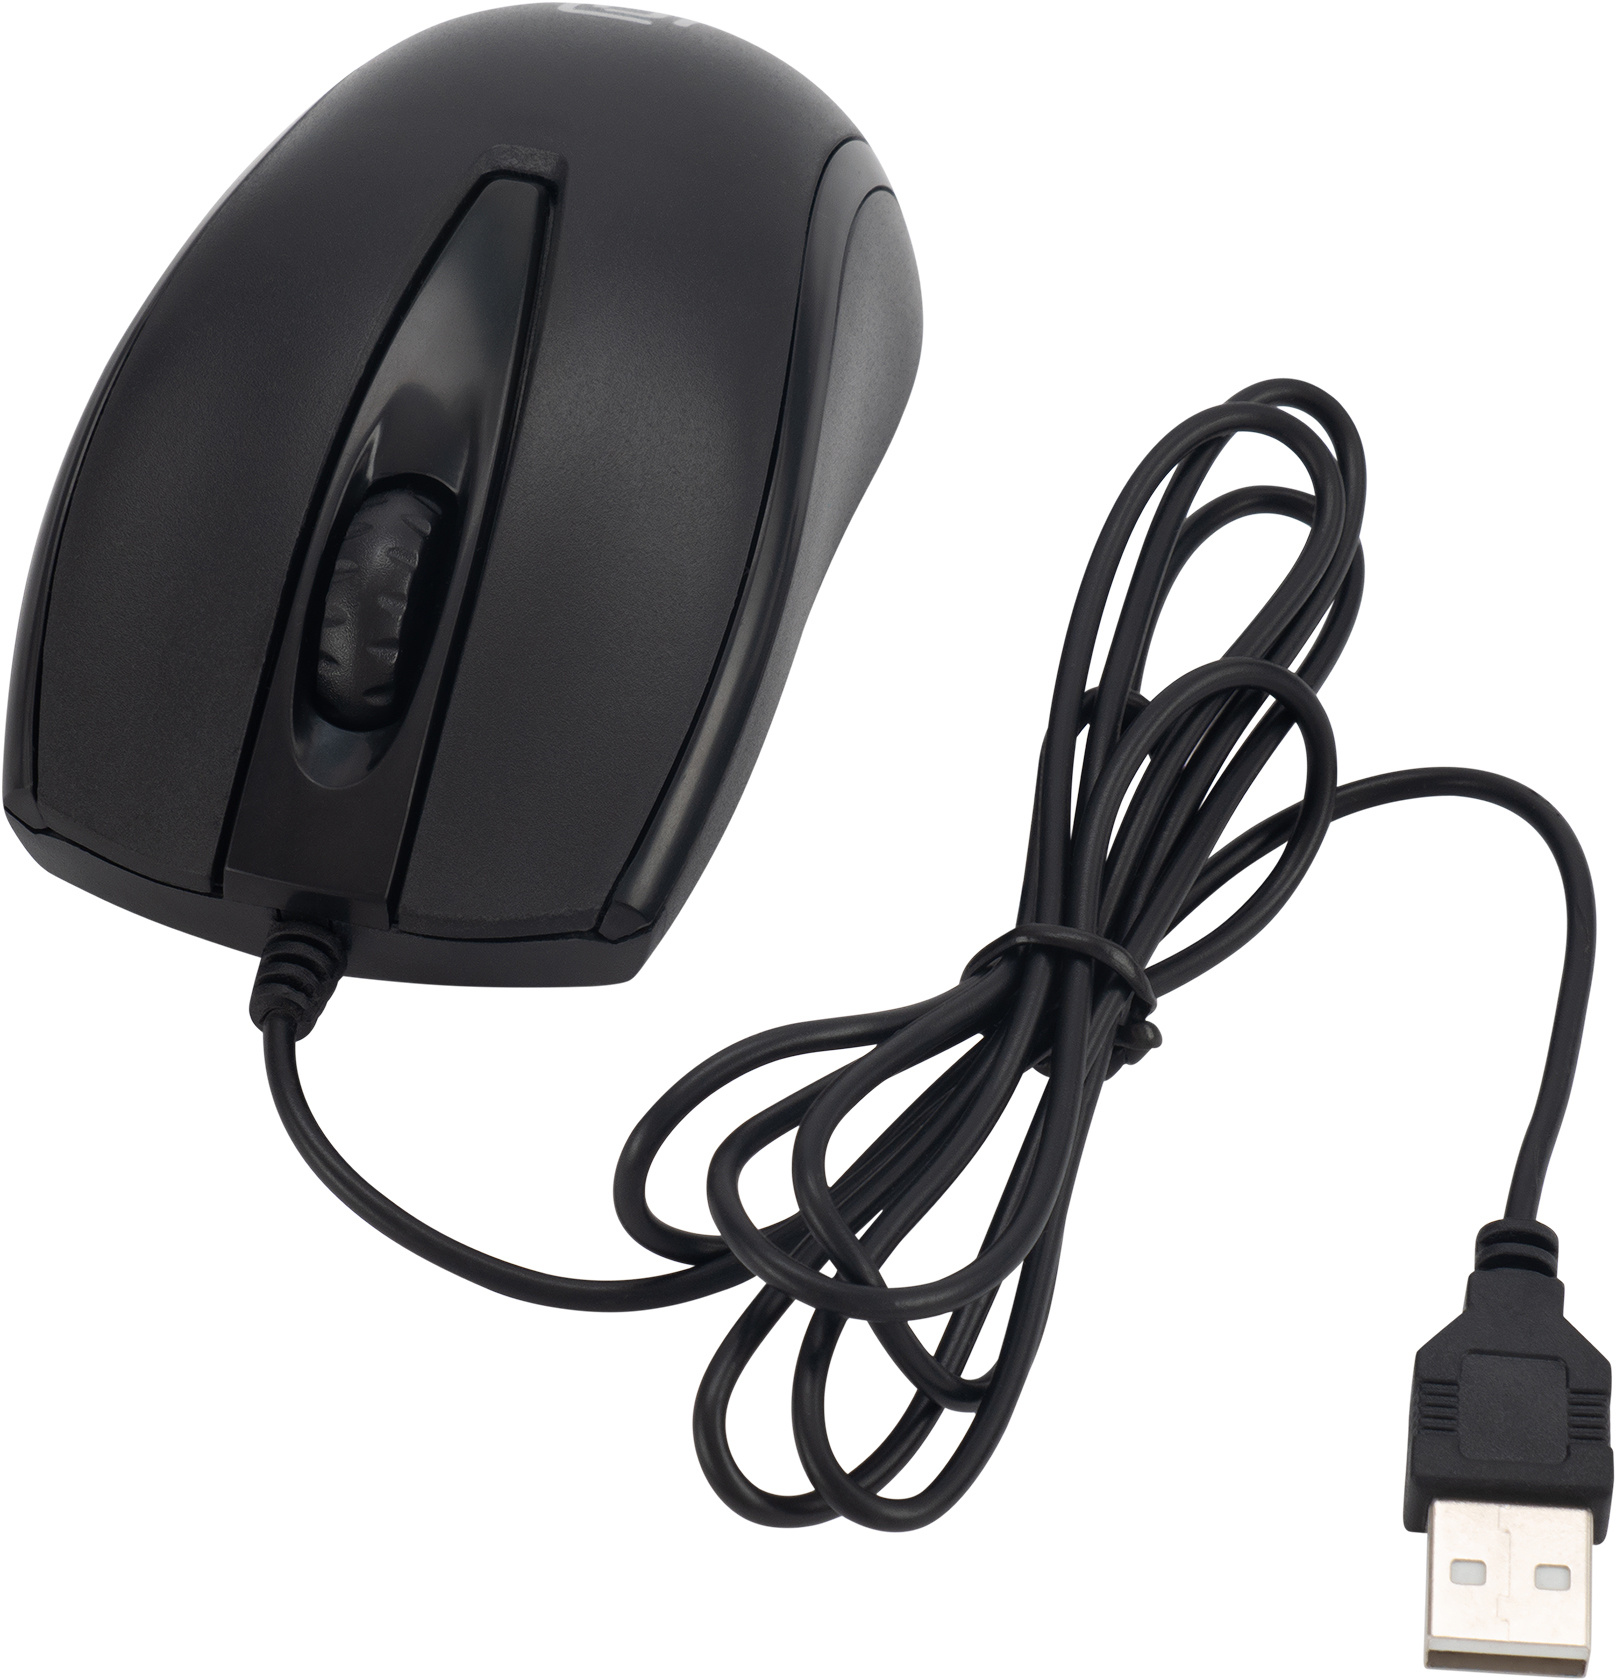 Клавиатура+мышь Oklick 630M клав:черный мышь:черный USB